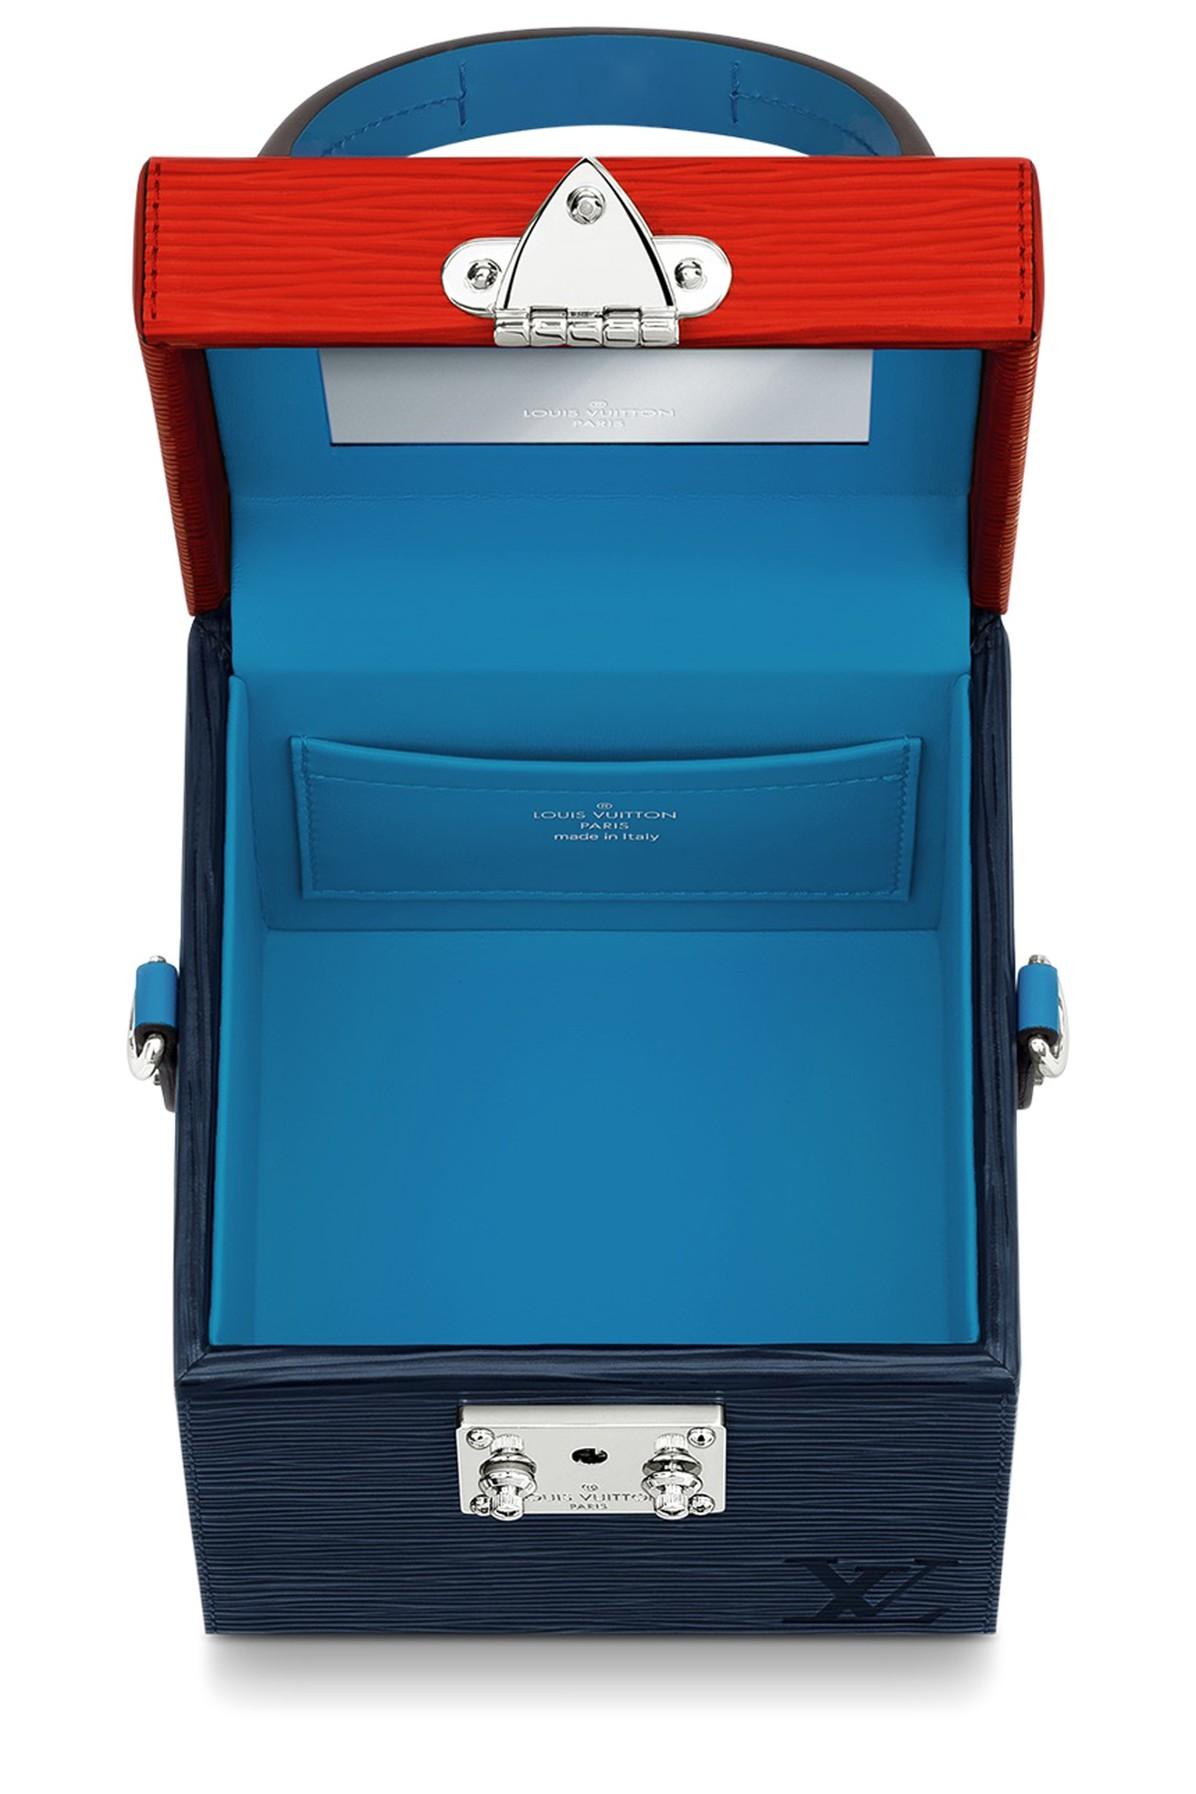 Mcm Medium Visetos Hat Box Suitcase - Brown